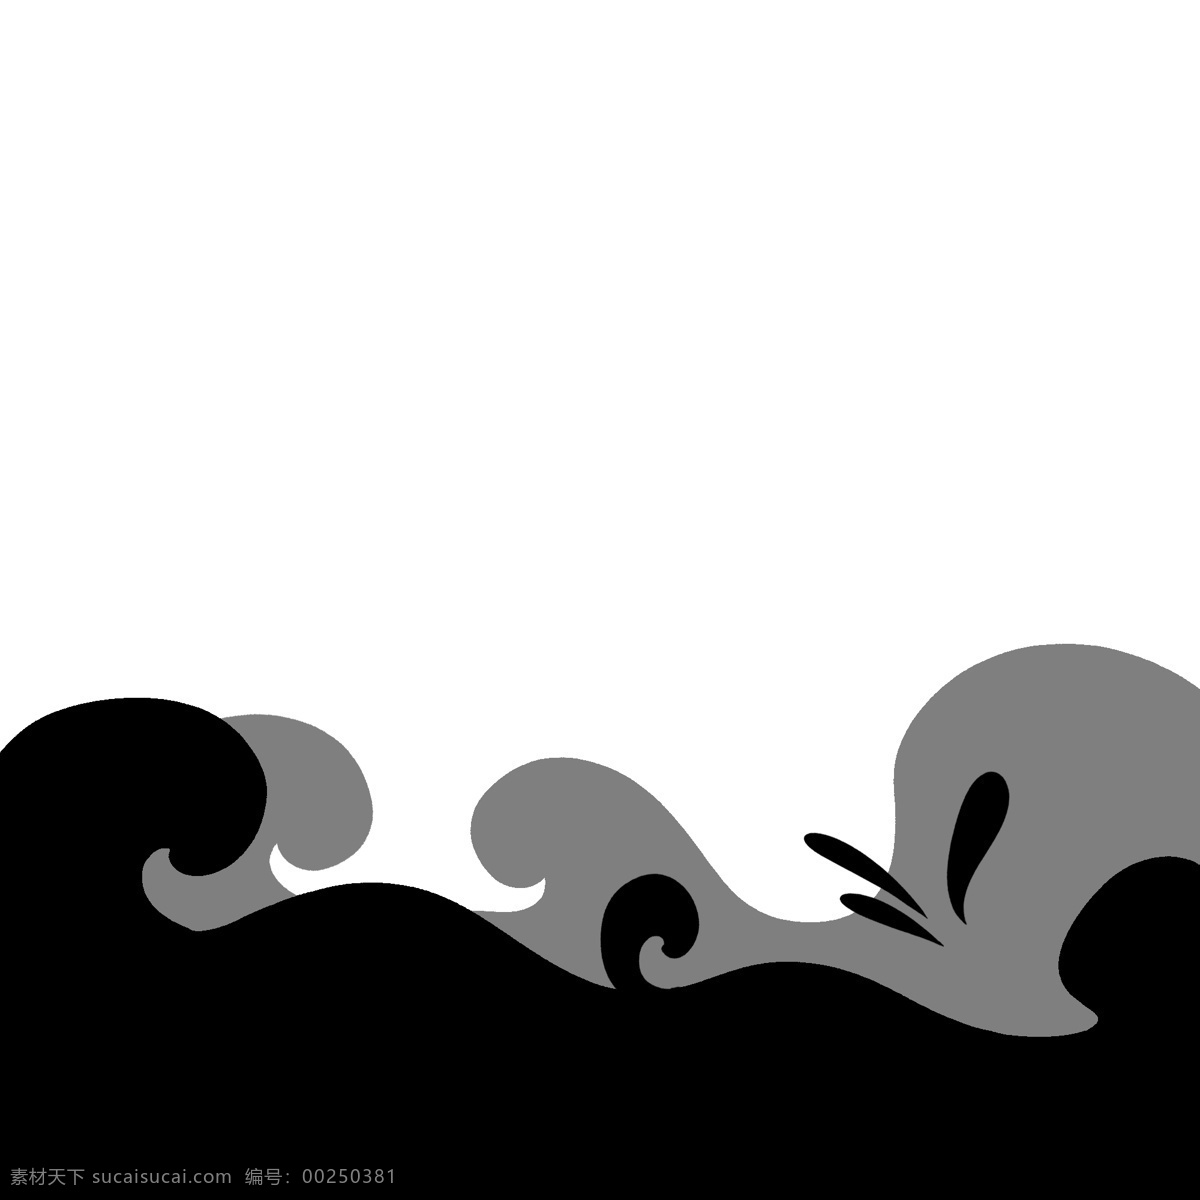 黑色 矢量 通用 海洋 图形 装饰 波浪 海浪 大海 浪花 水滴 水花 祥云 抽象 几何 极简 幻想 图案 海产 海鲜渔业 流动